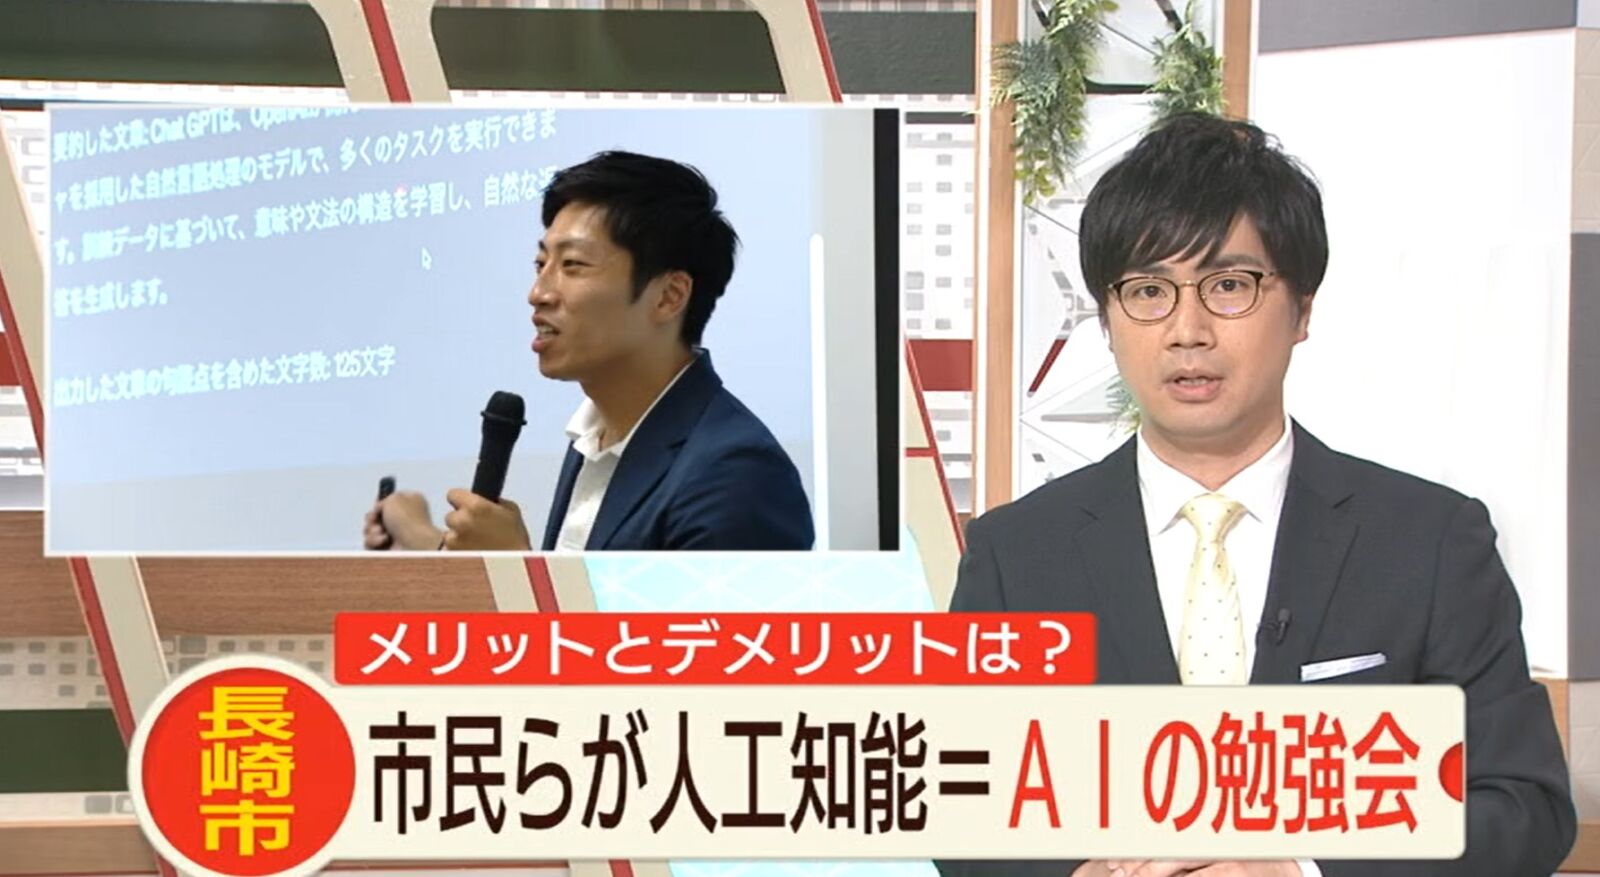 長崎市役所が主催する生成AIのセミナーに弊社の原崎が講師として登壇を行い、NCC長崎文化放送がセミナーの様子を取り上げました。